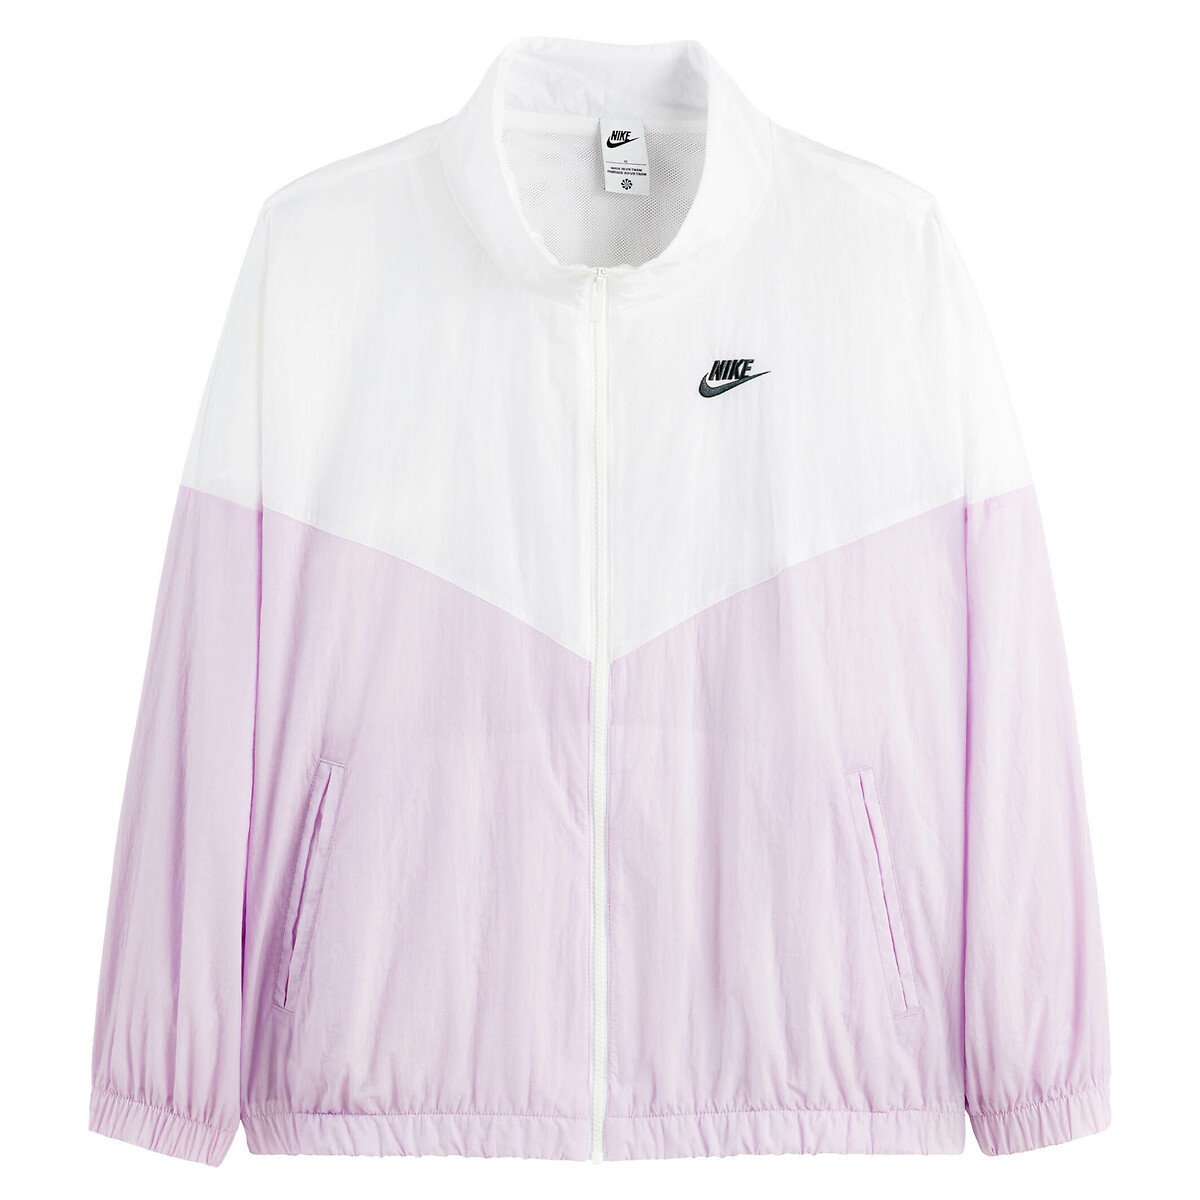 Sportswear essential windrunner jacket, white/pink, Nike | La